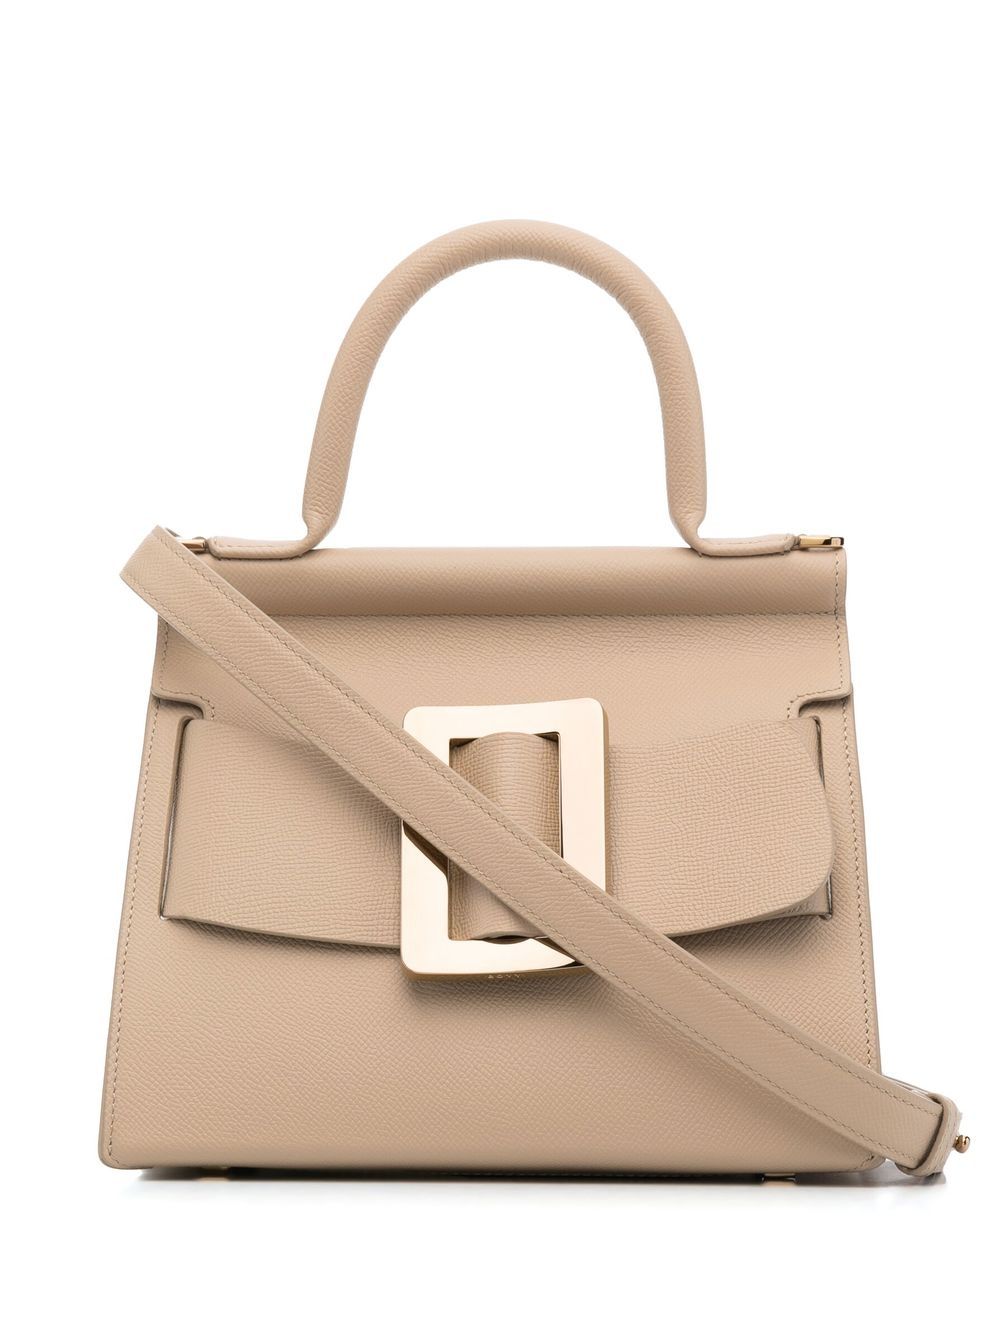 Karl 24 leather handbag